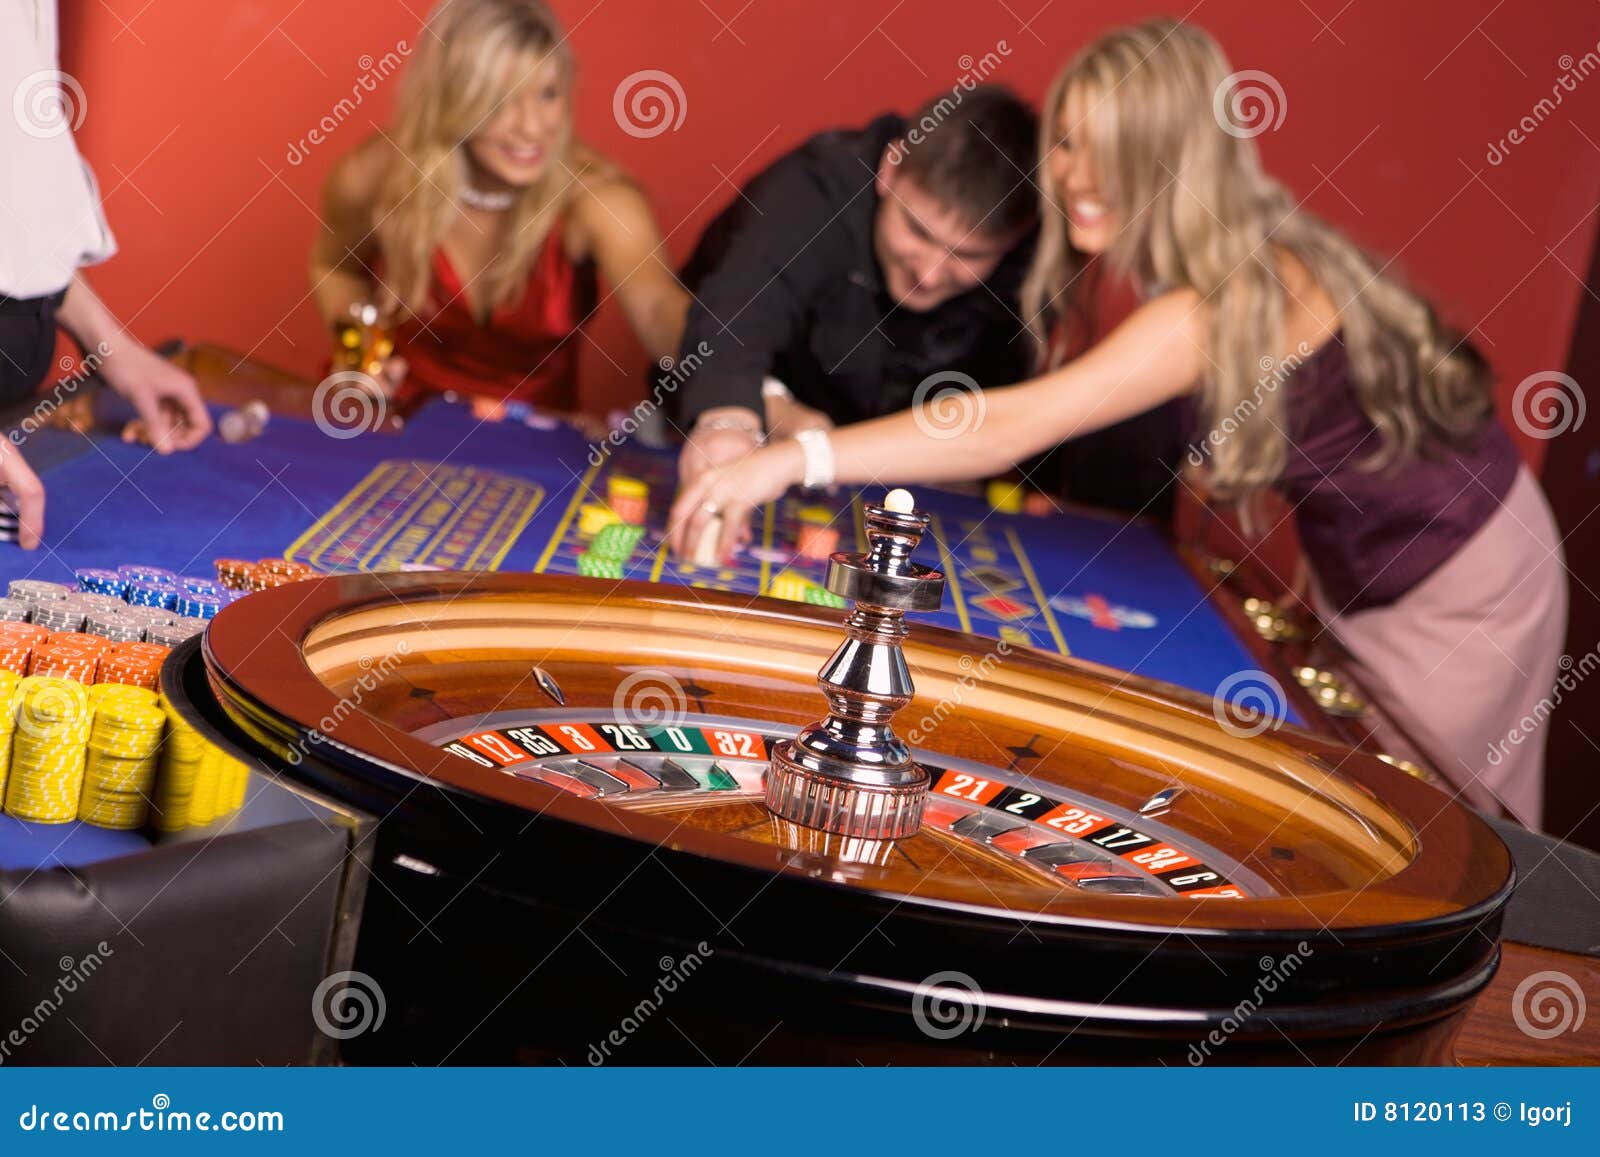 casino crash